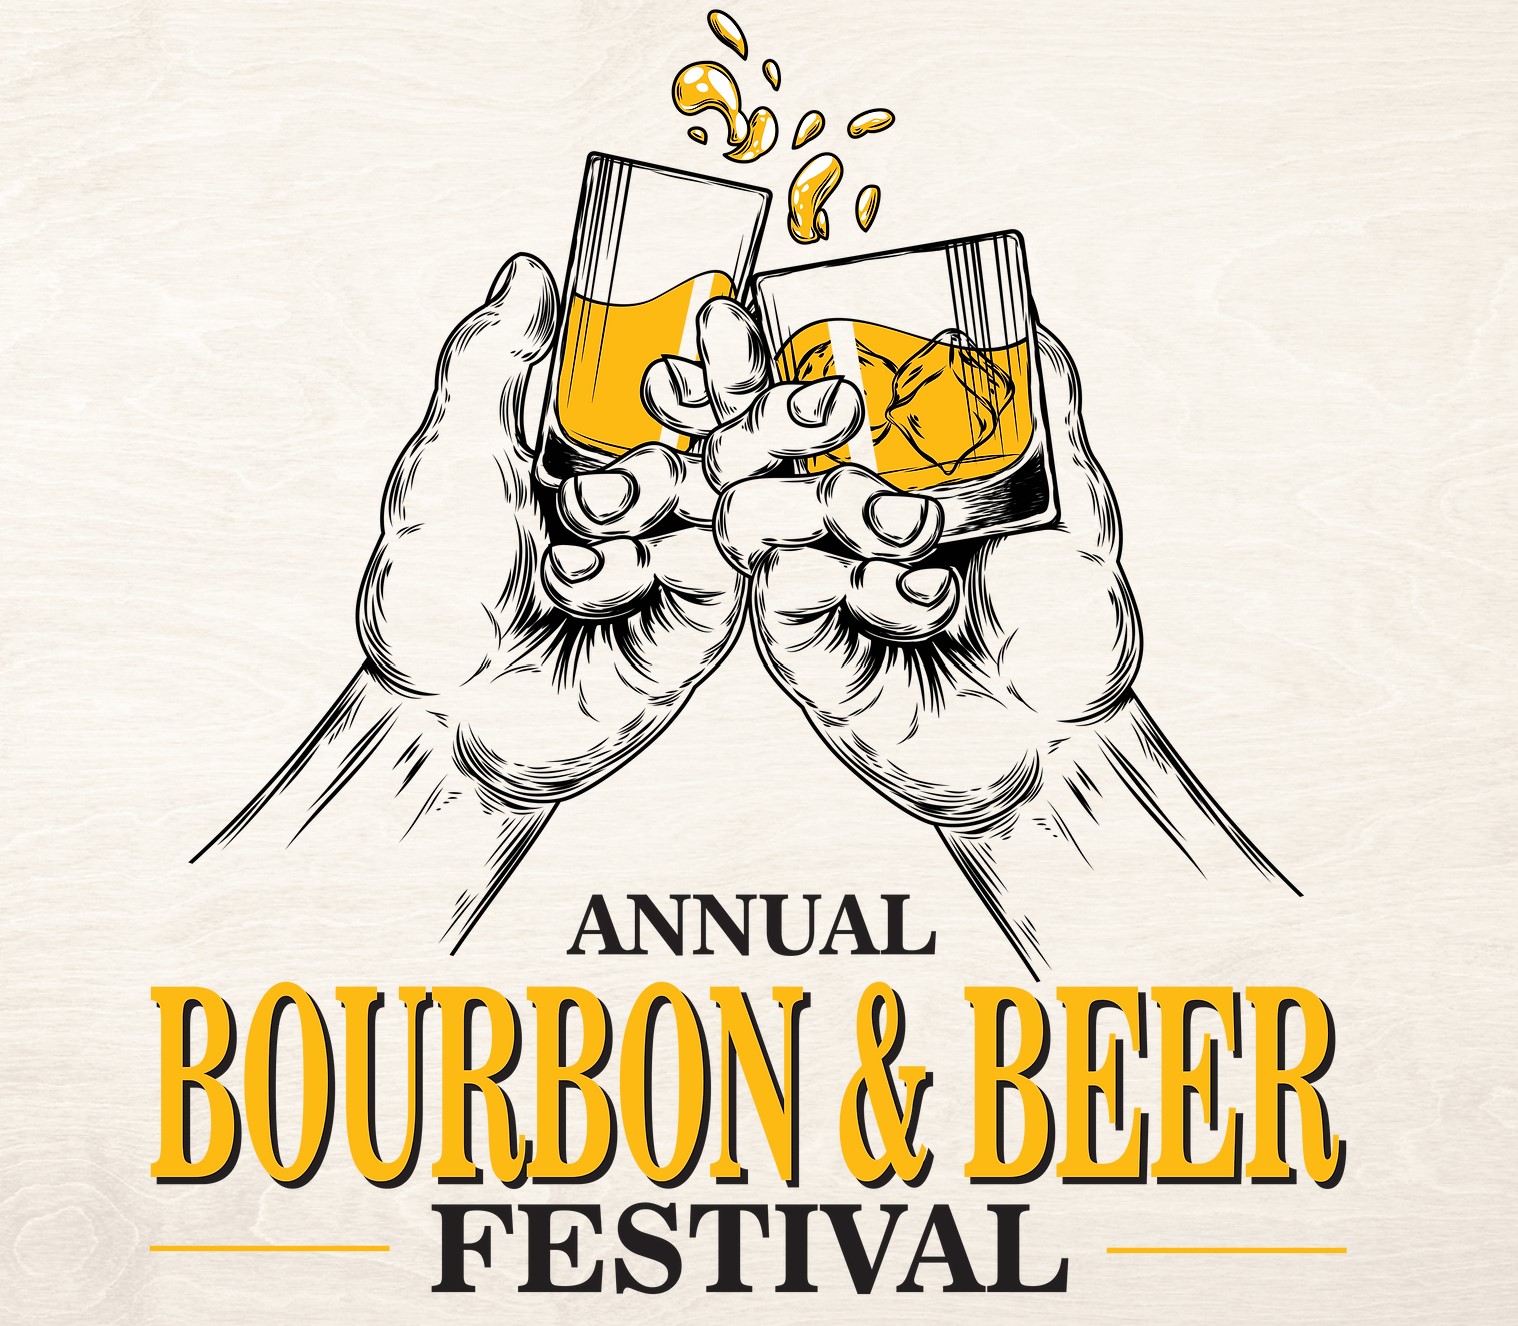 Annual Bourbon & Beer Festival